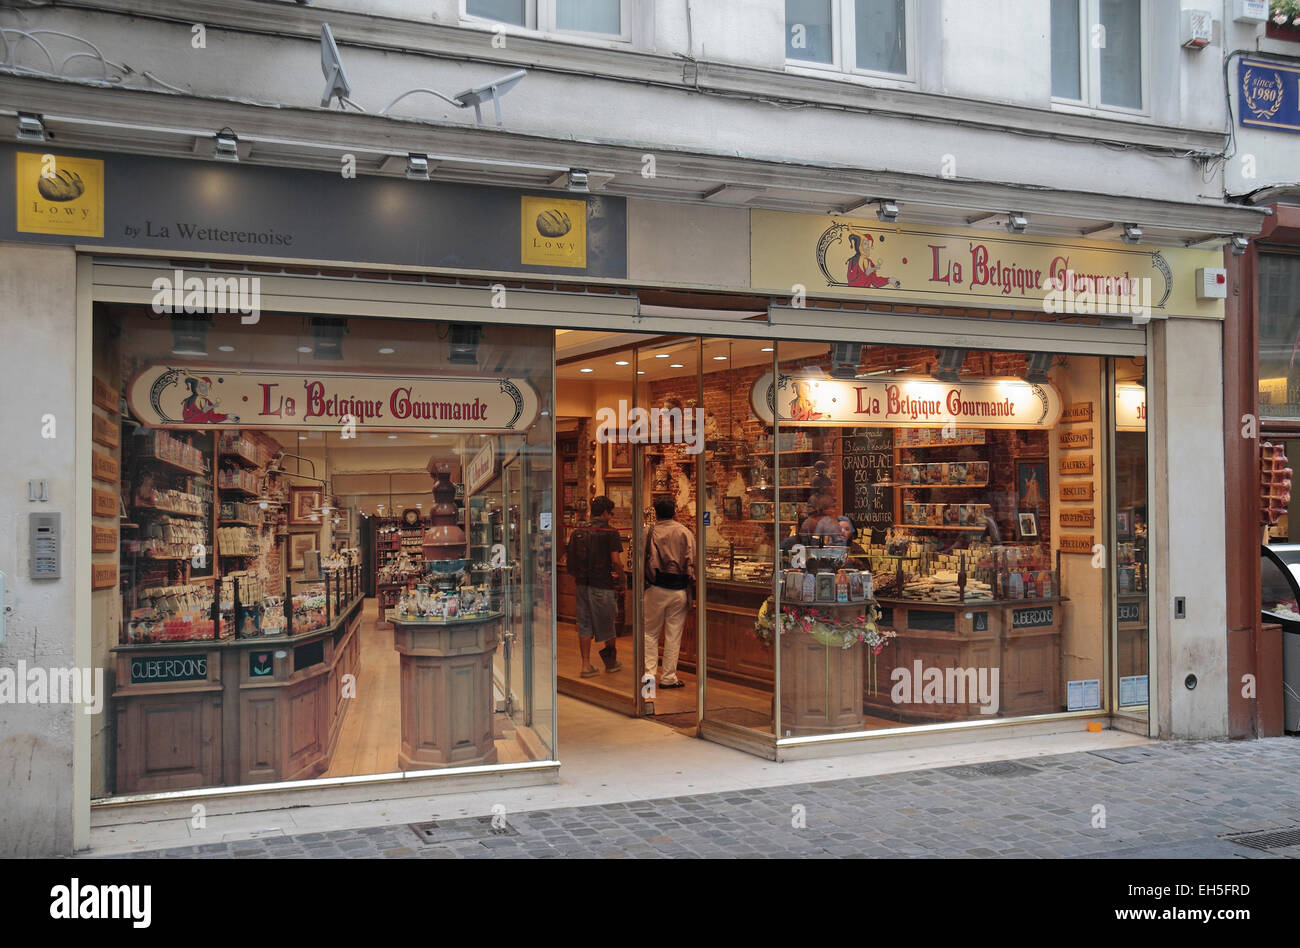 A branch of La Belgique Gourmande, makers of Belgian chocolates, in Brussels, Belgium. Stock Photo